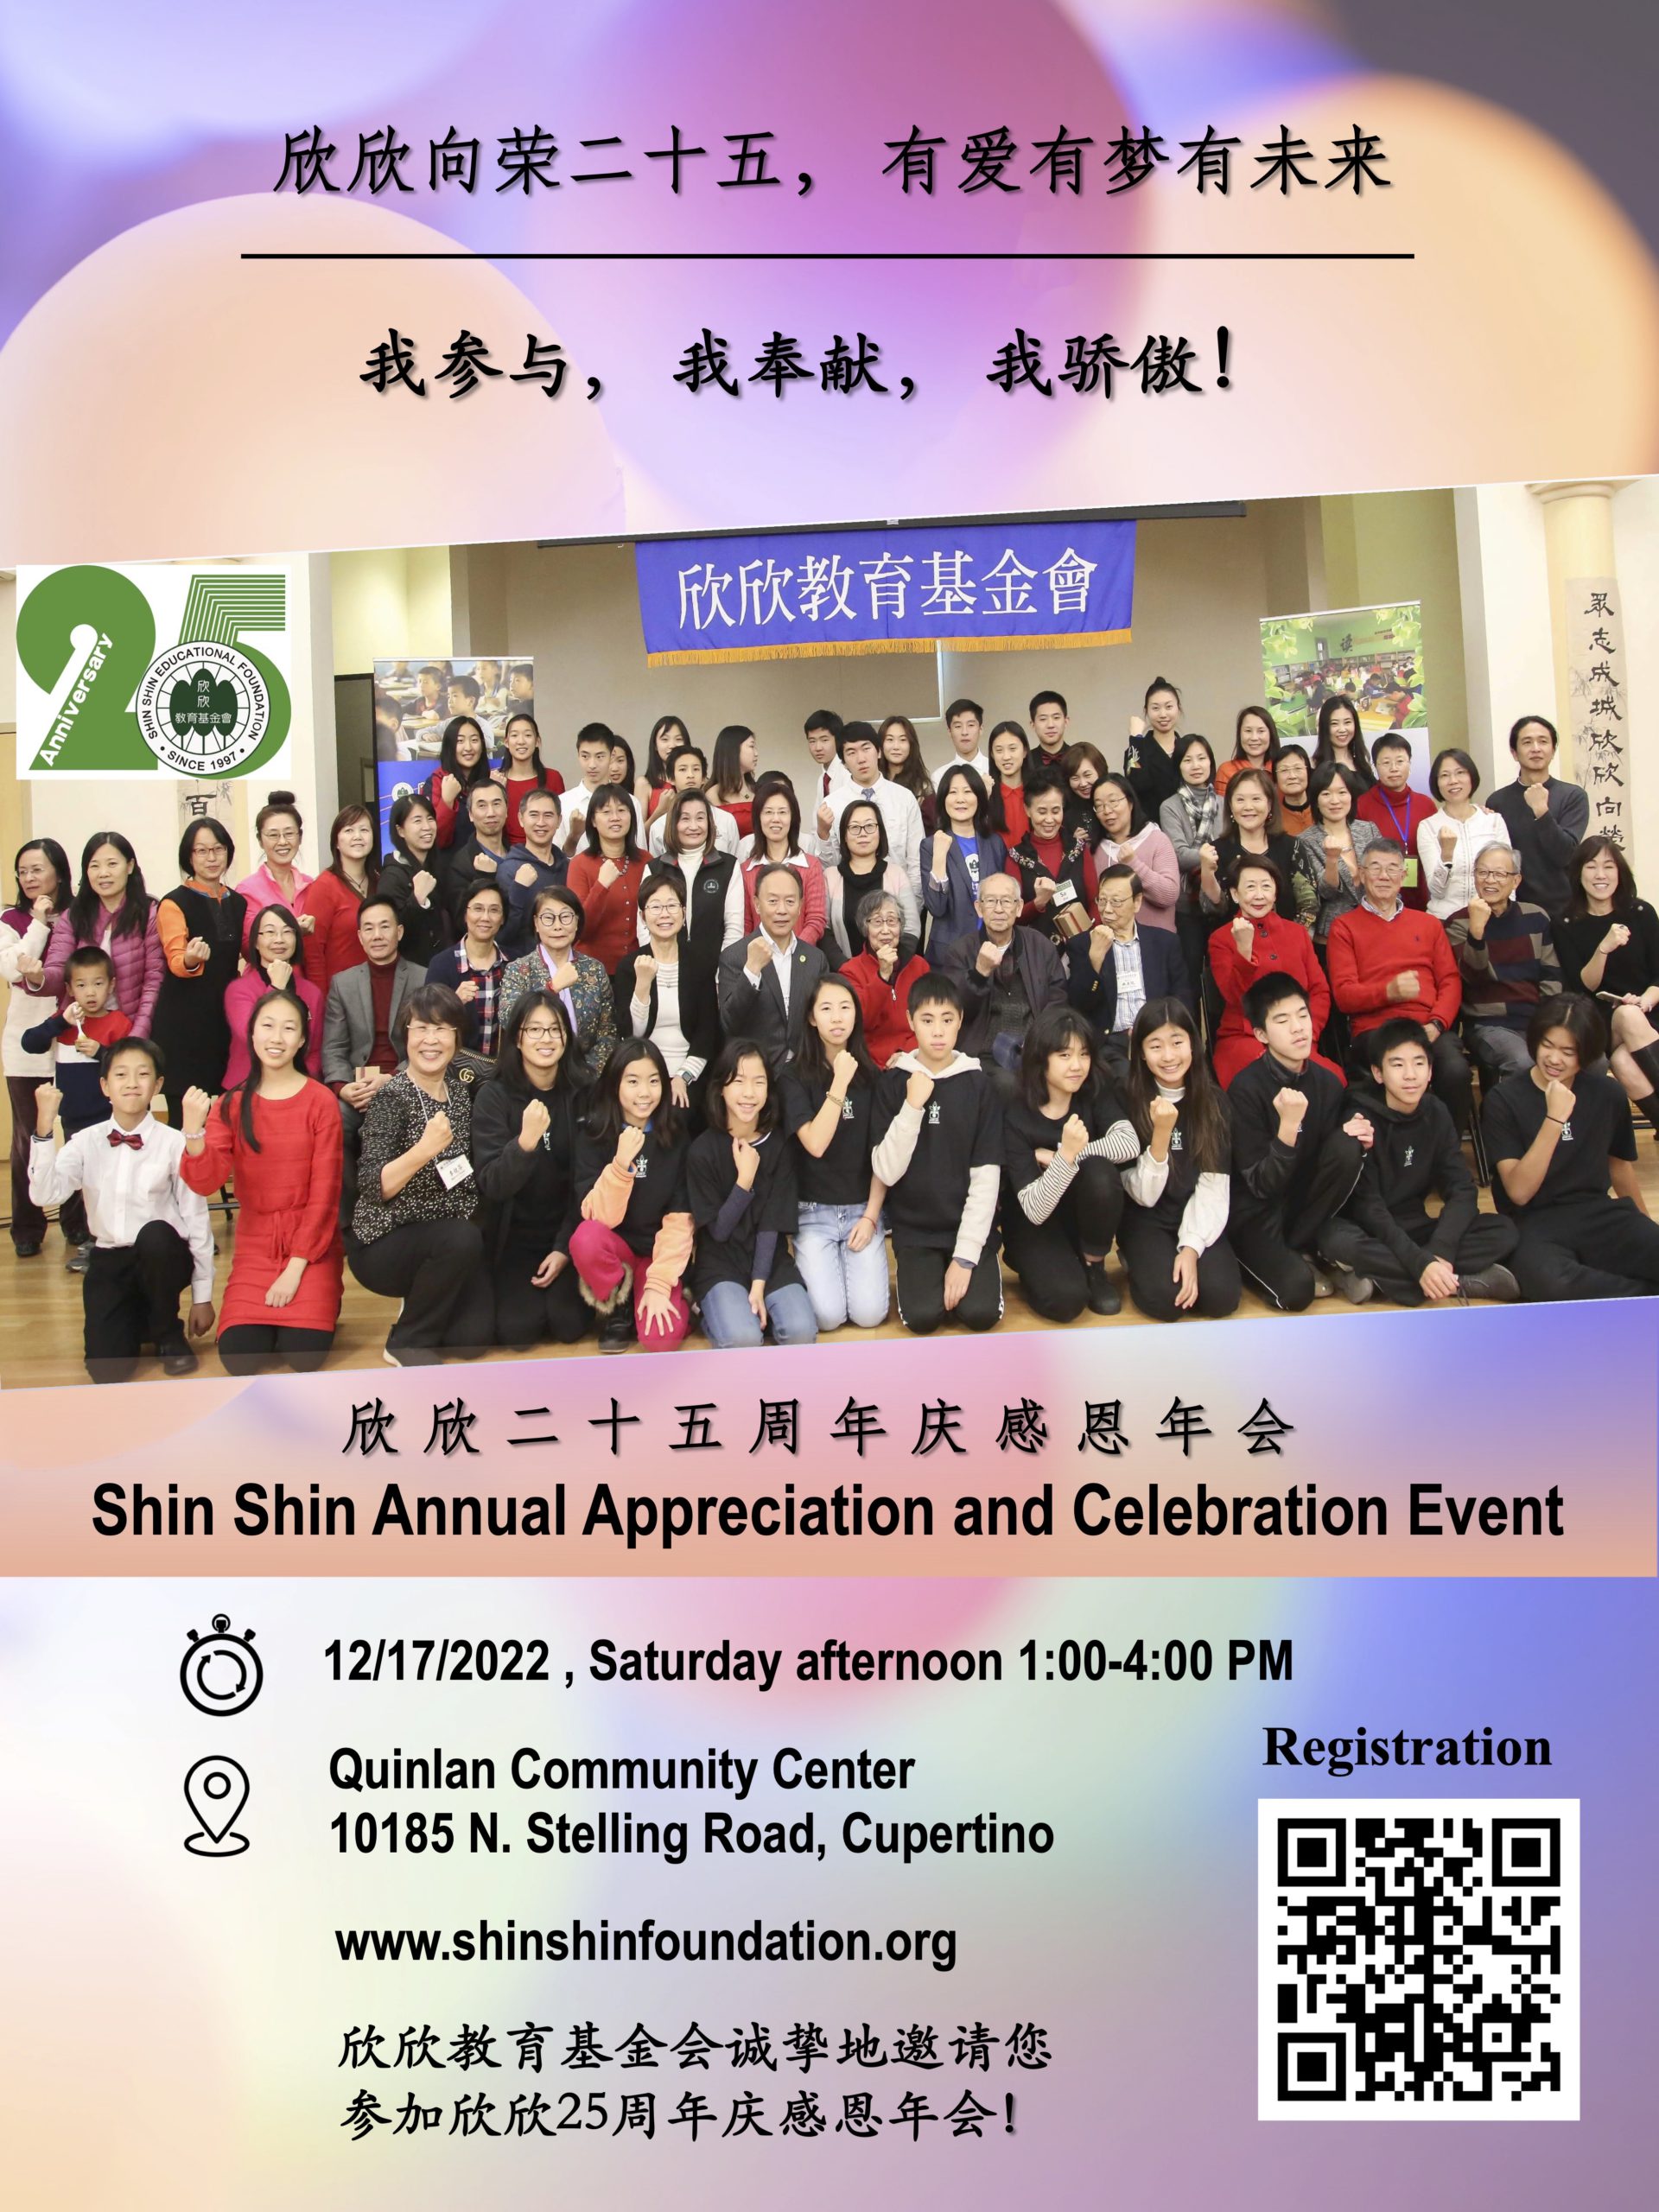 Shin Shin Annual Appreciation and Celebration Event